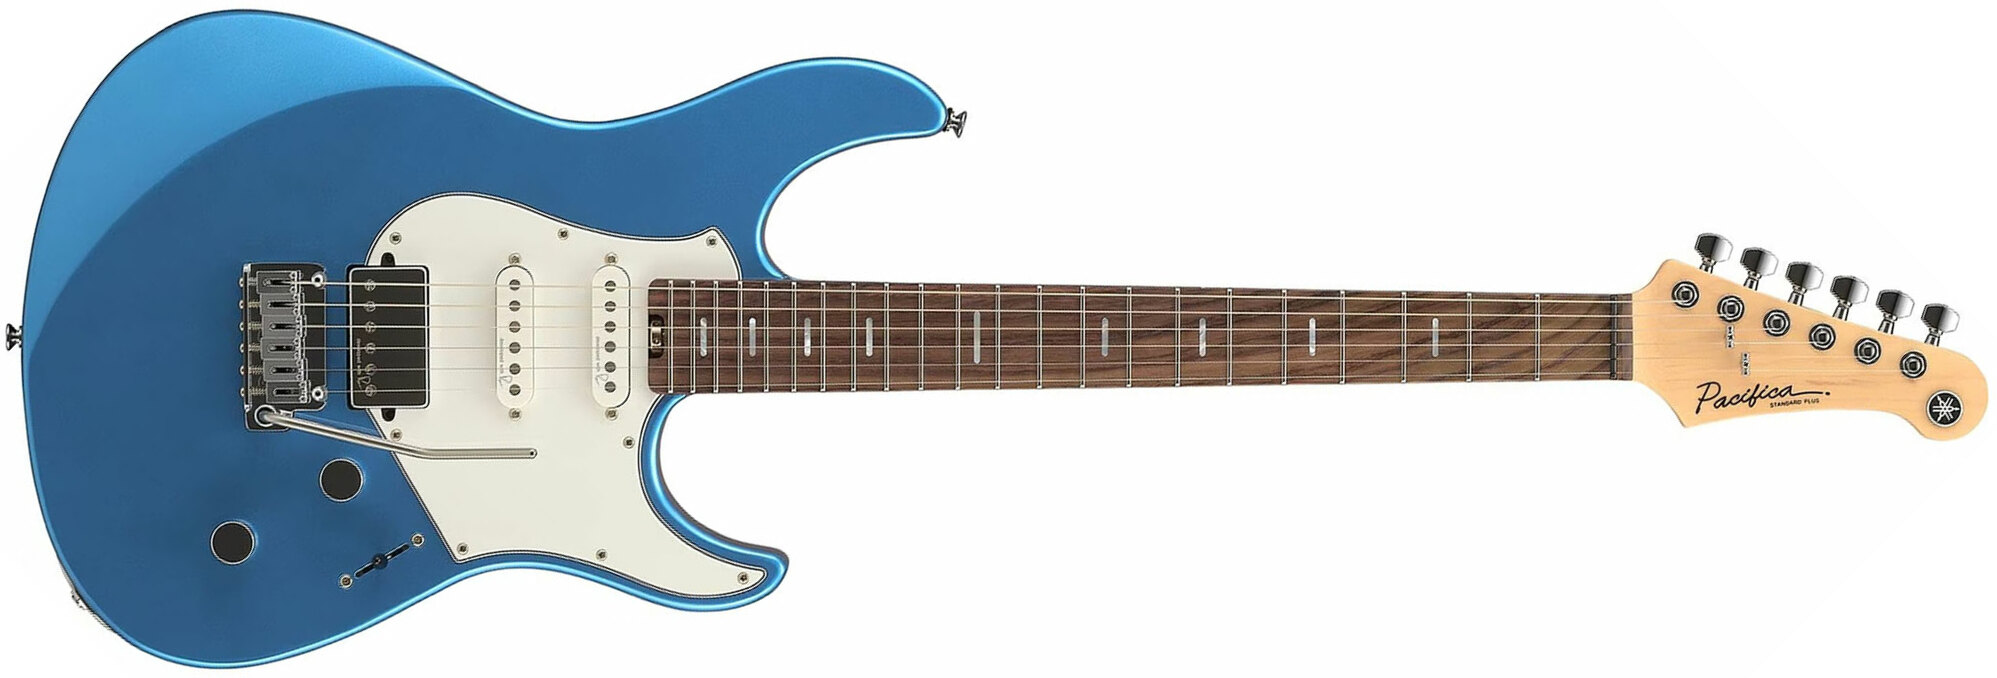 Yamaha Pacifica Standard Plus Pacs+12 Trem Hss Rw - Sparkle Blue - Str shape electric guitar - Main picture